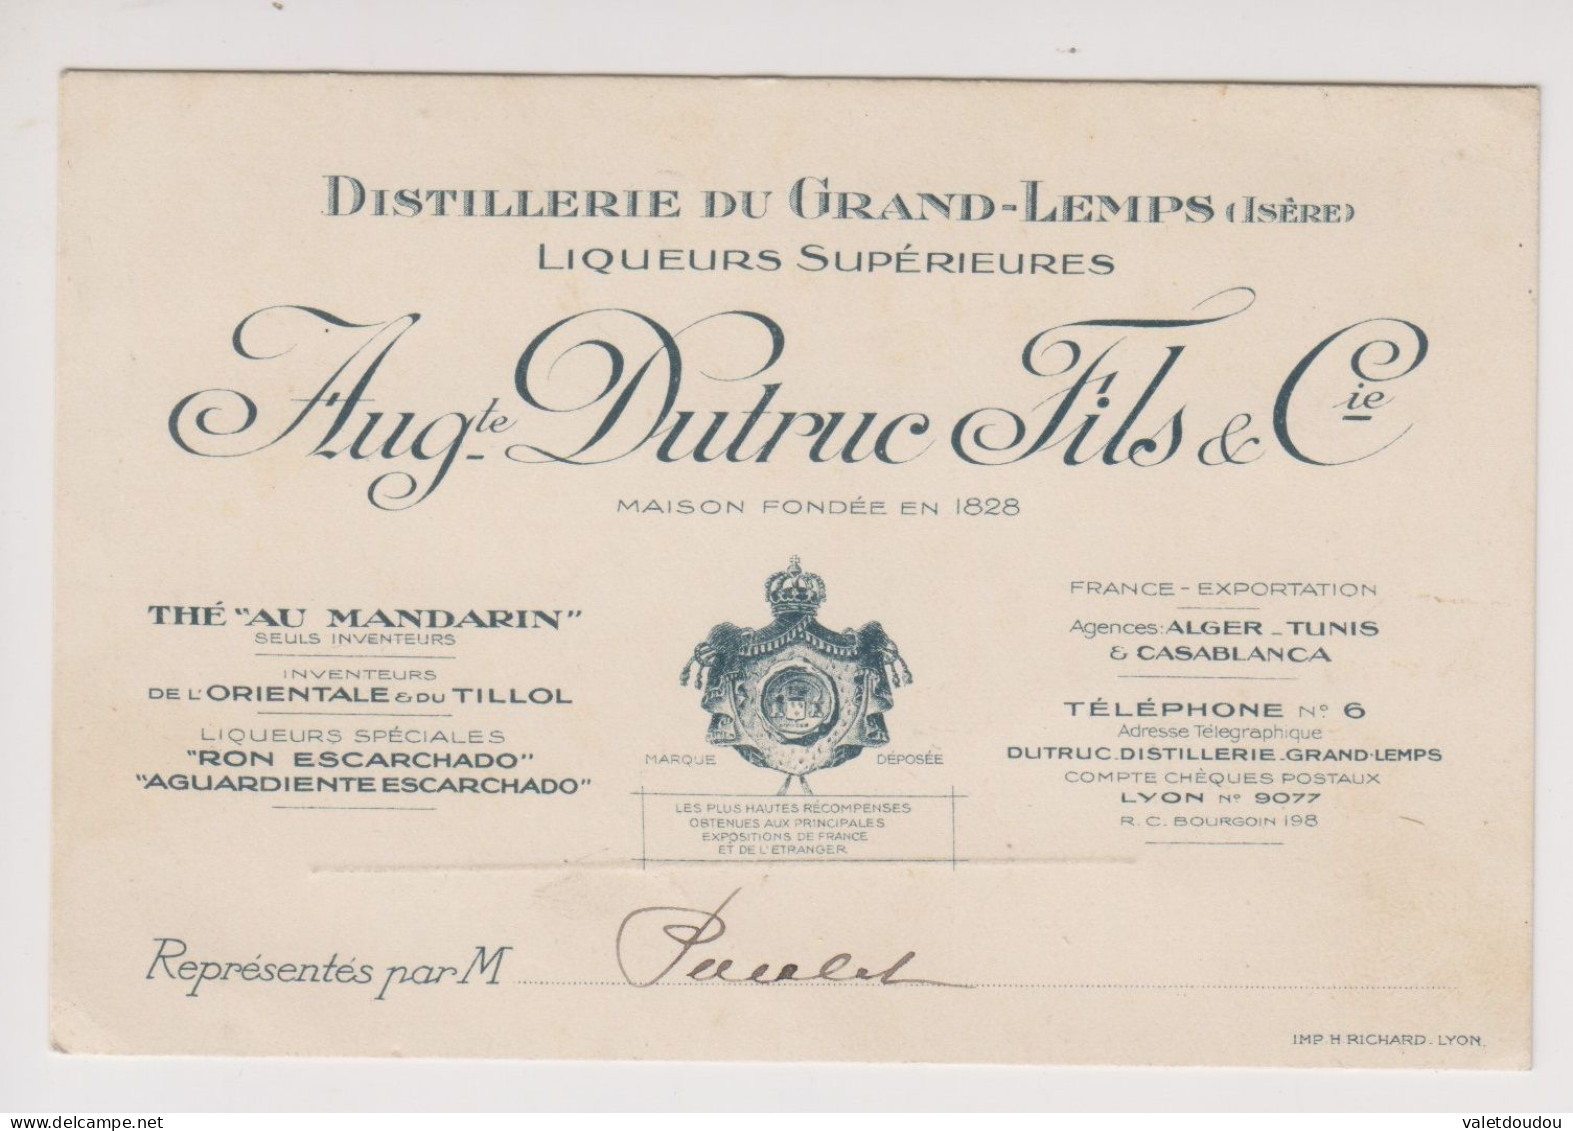 Carte De Visite Auguste Dutruc Fils & Cie .Distillerie Du Grand-Lemps. - Visitenkarten